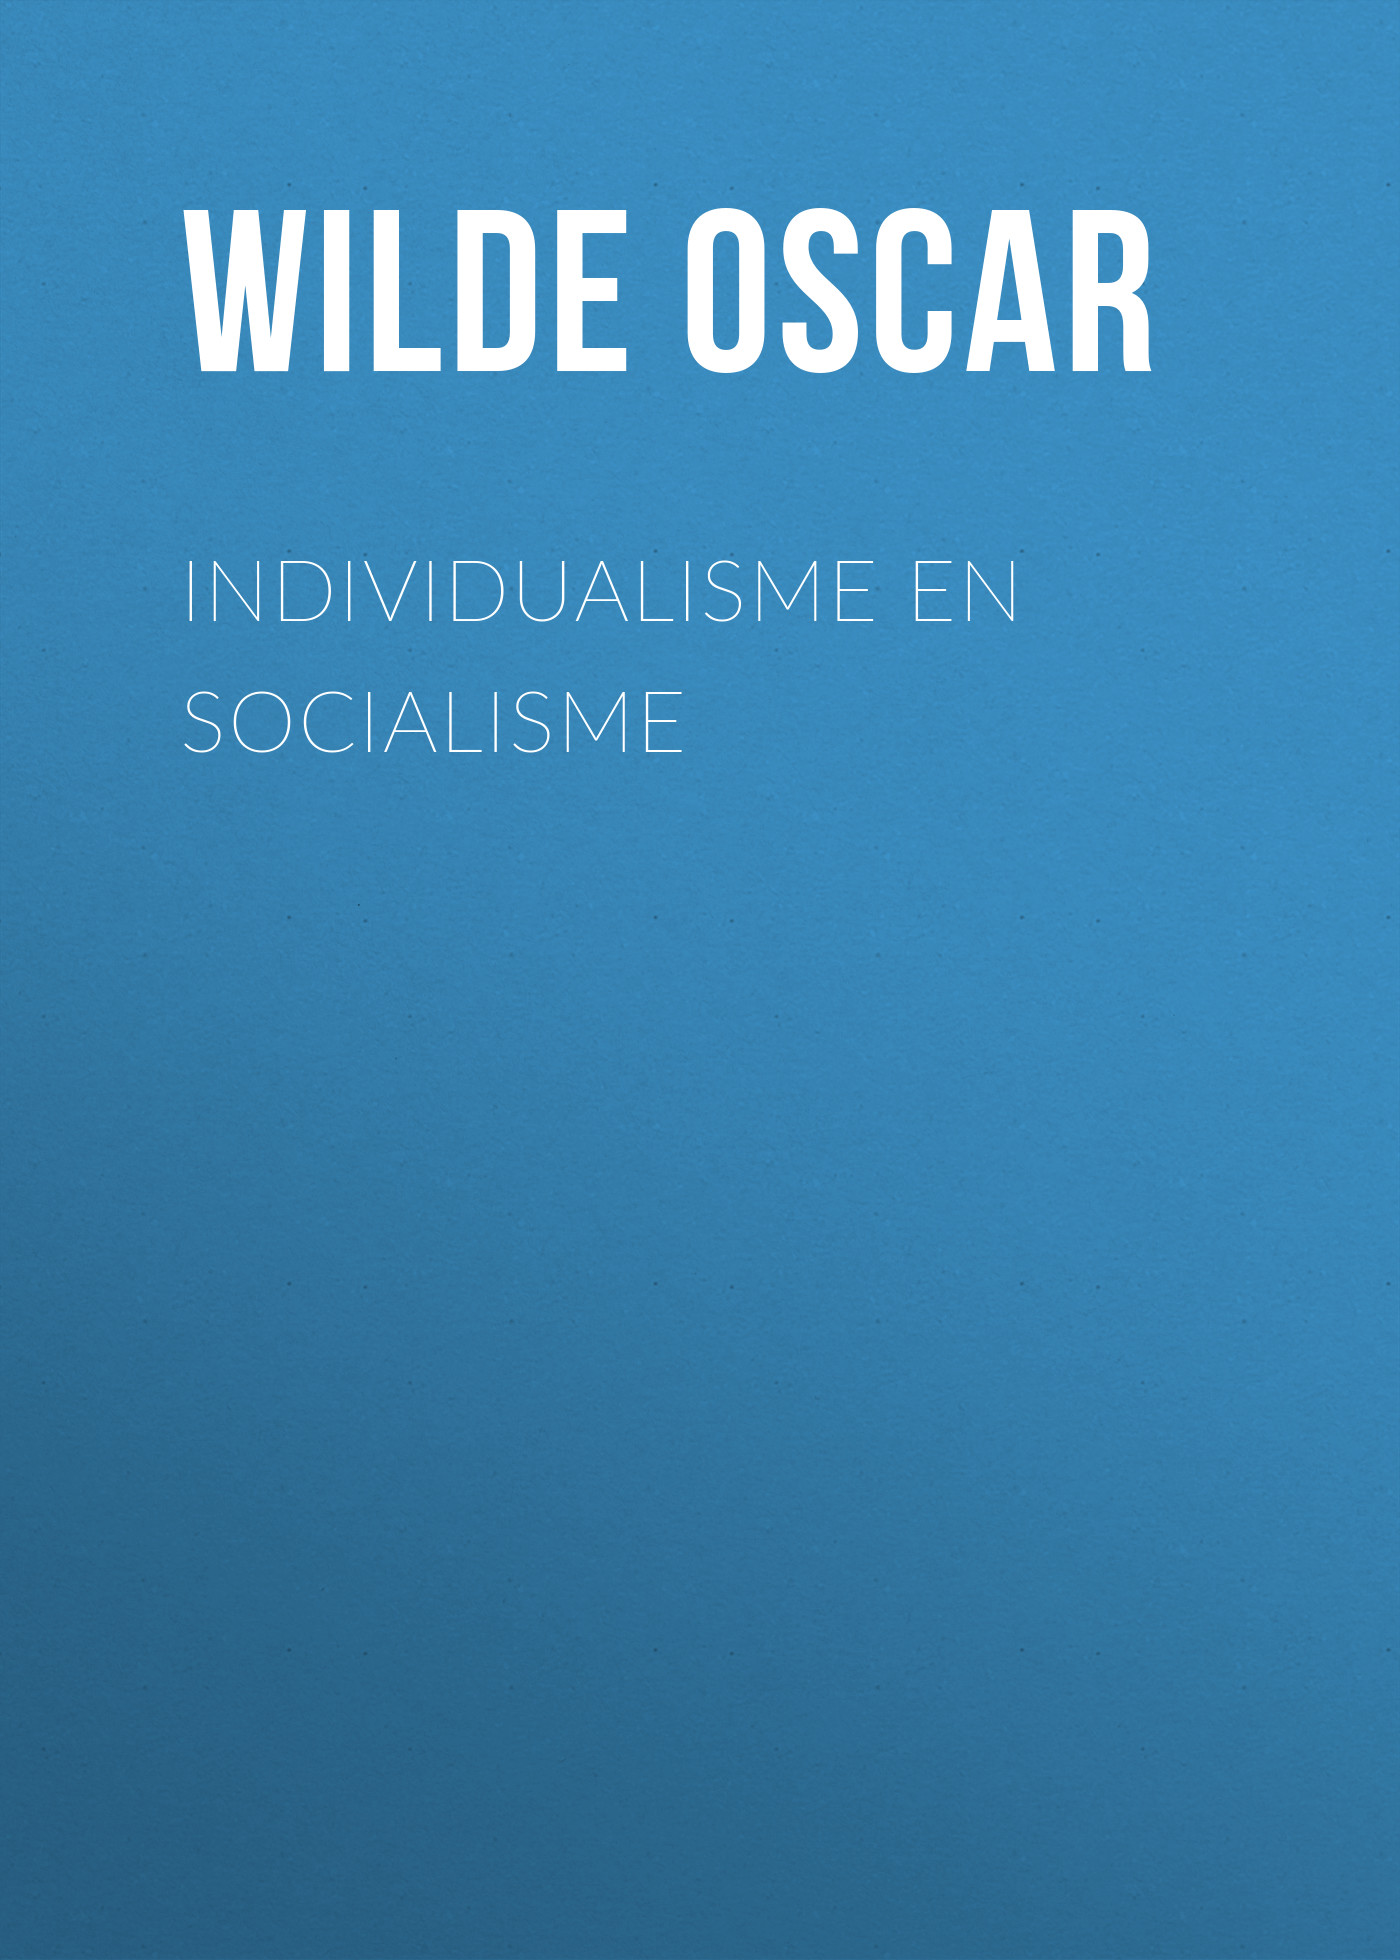 Книга Individualisme en socialisme из серии , созданная Oscar Wilde, может относится к жанру История, Литература 19 века, Зарубежная классика. Стоимость электронной книги Individualisme en socialisme с идентификатором 25561060 составляет 0 руб.